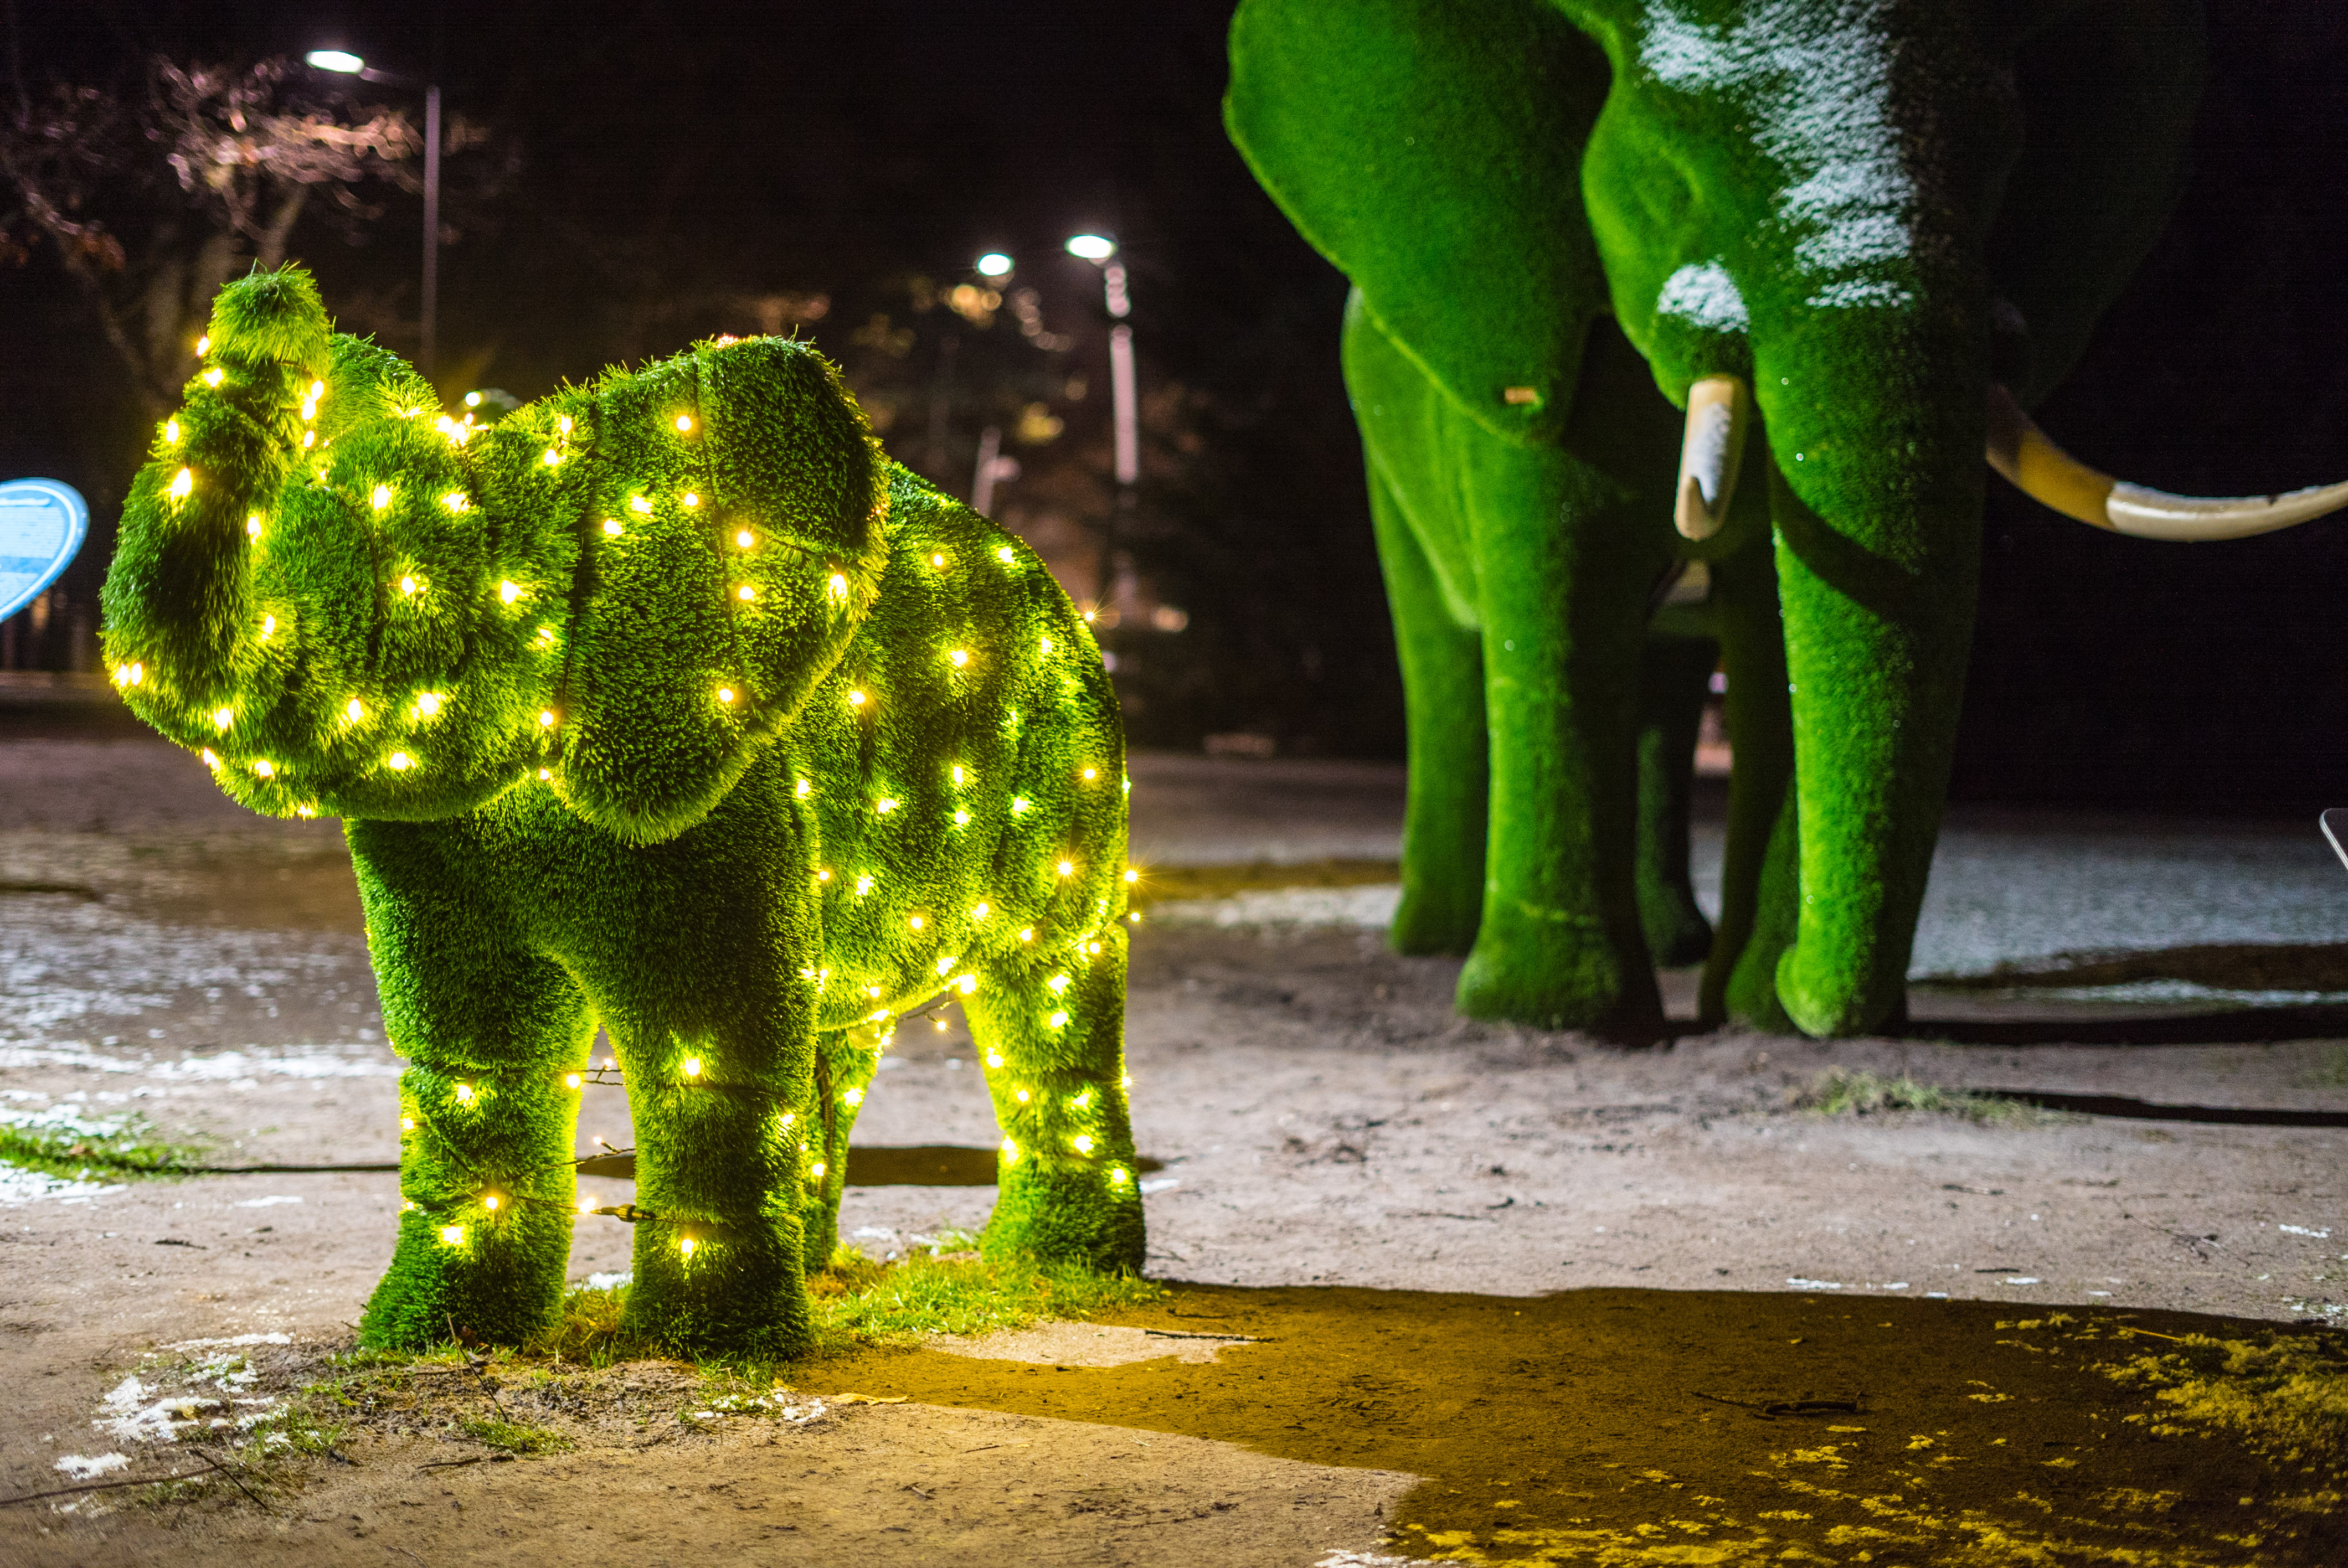 Elefantskulpturer gjorda av gräs. En stor elefant och en liten som har ljusslingor runt sig.